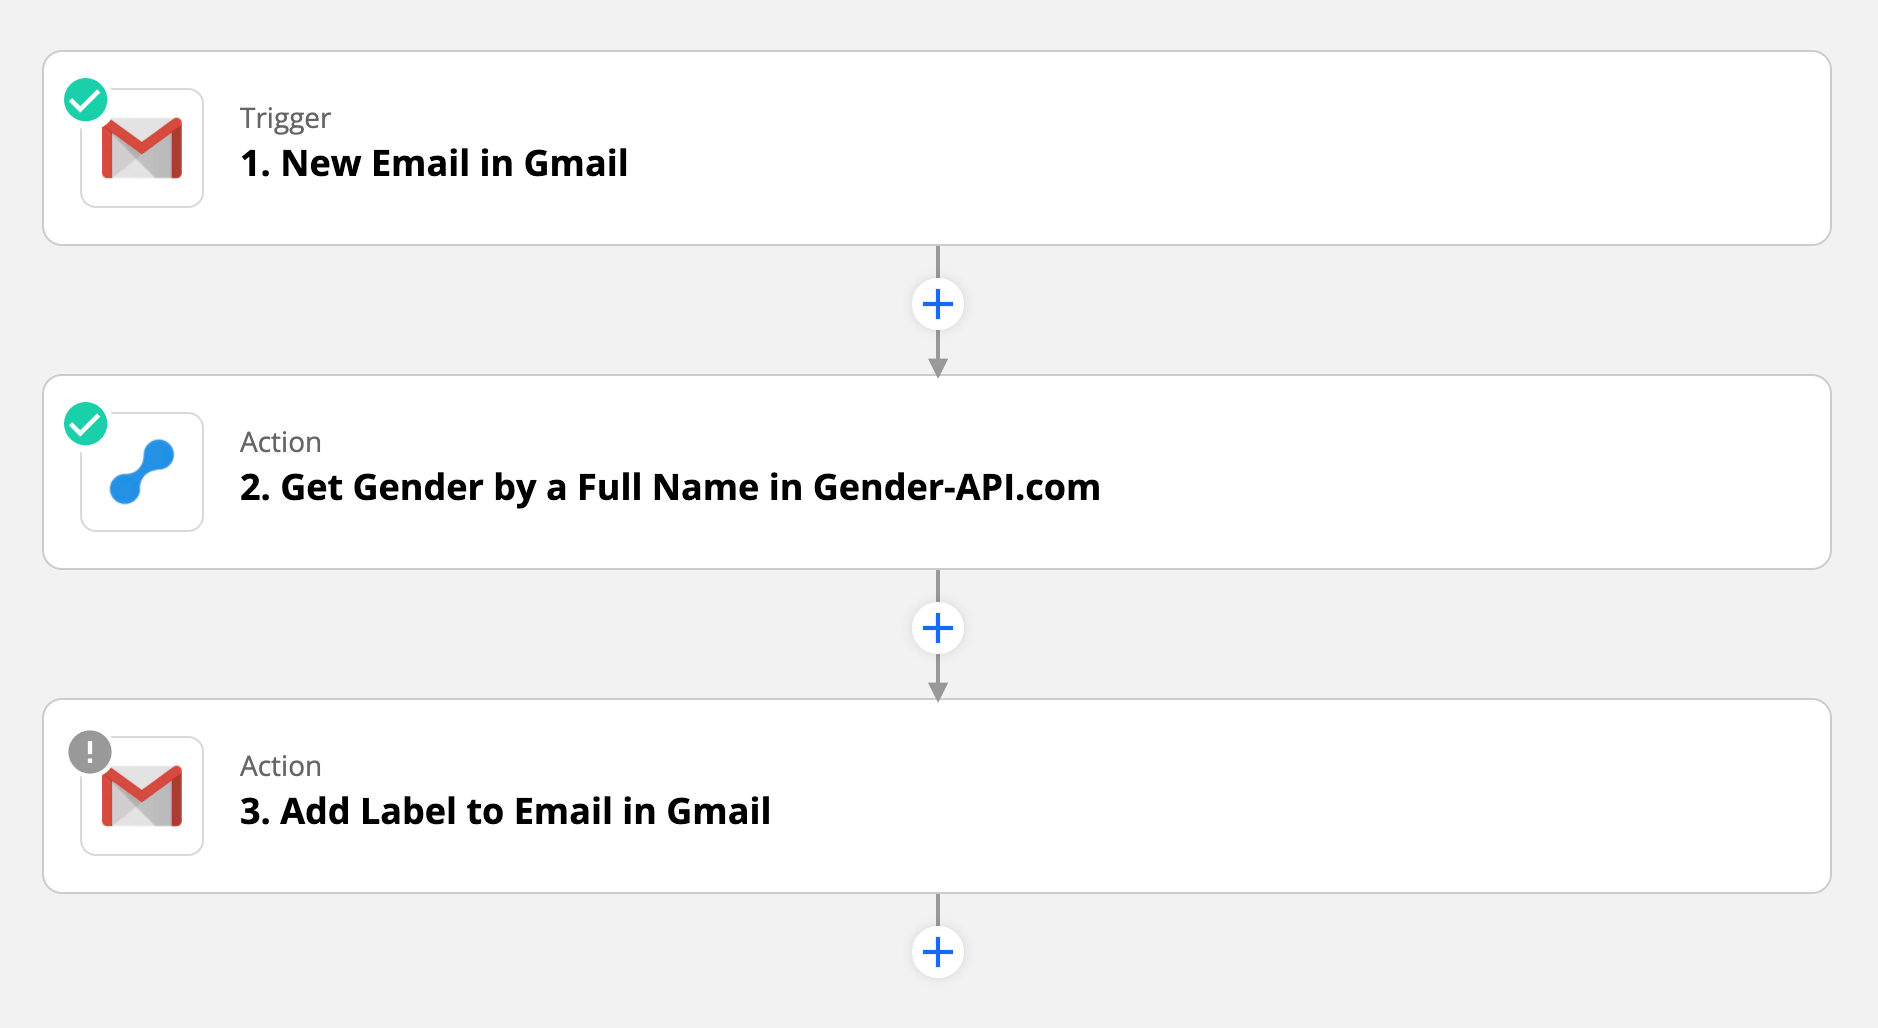 Bepaal het geslacht van de afzender van de e-mail